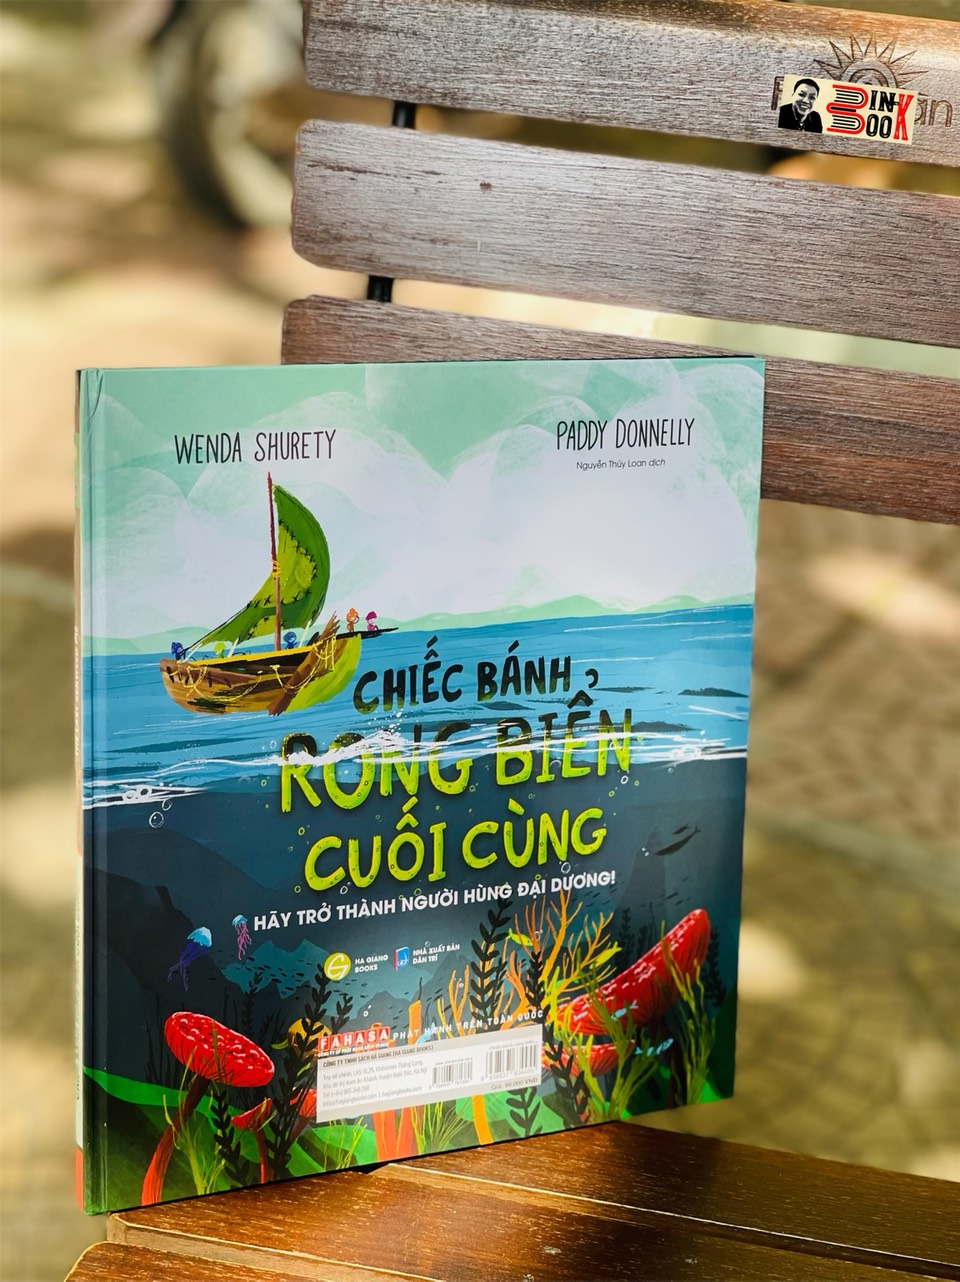 CHIẾC BÁNH RONG BIỂN CUỐI CÙNG – hãy trở thành người hùng của đại dương (song ngữ Anh – Việt) – bìa cứng in màu toàn bộ - Hà Giang Books